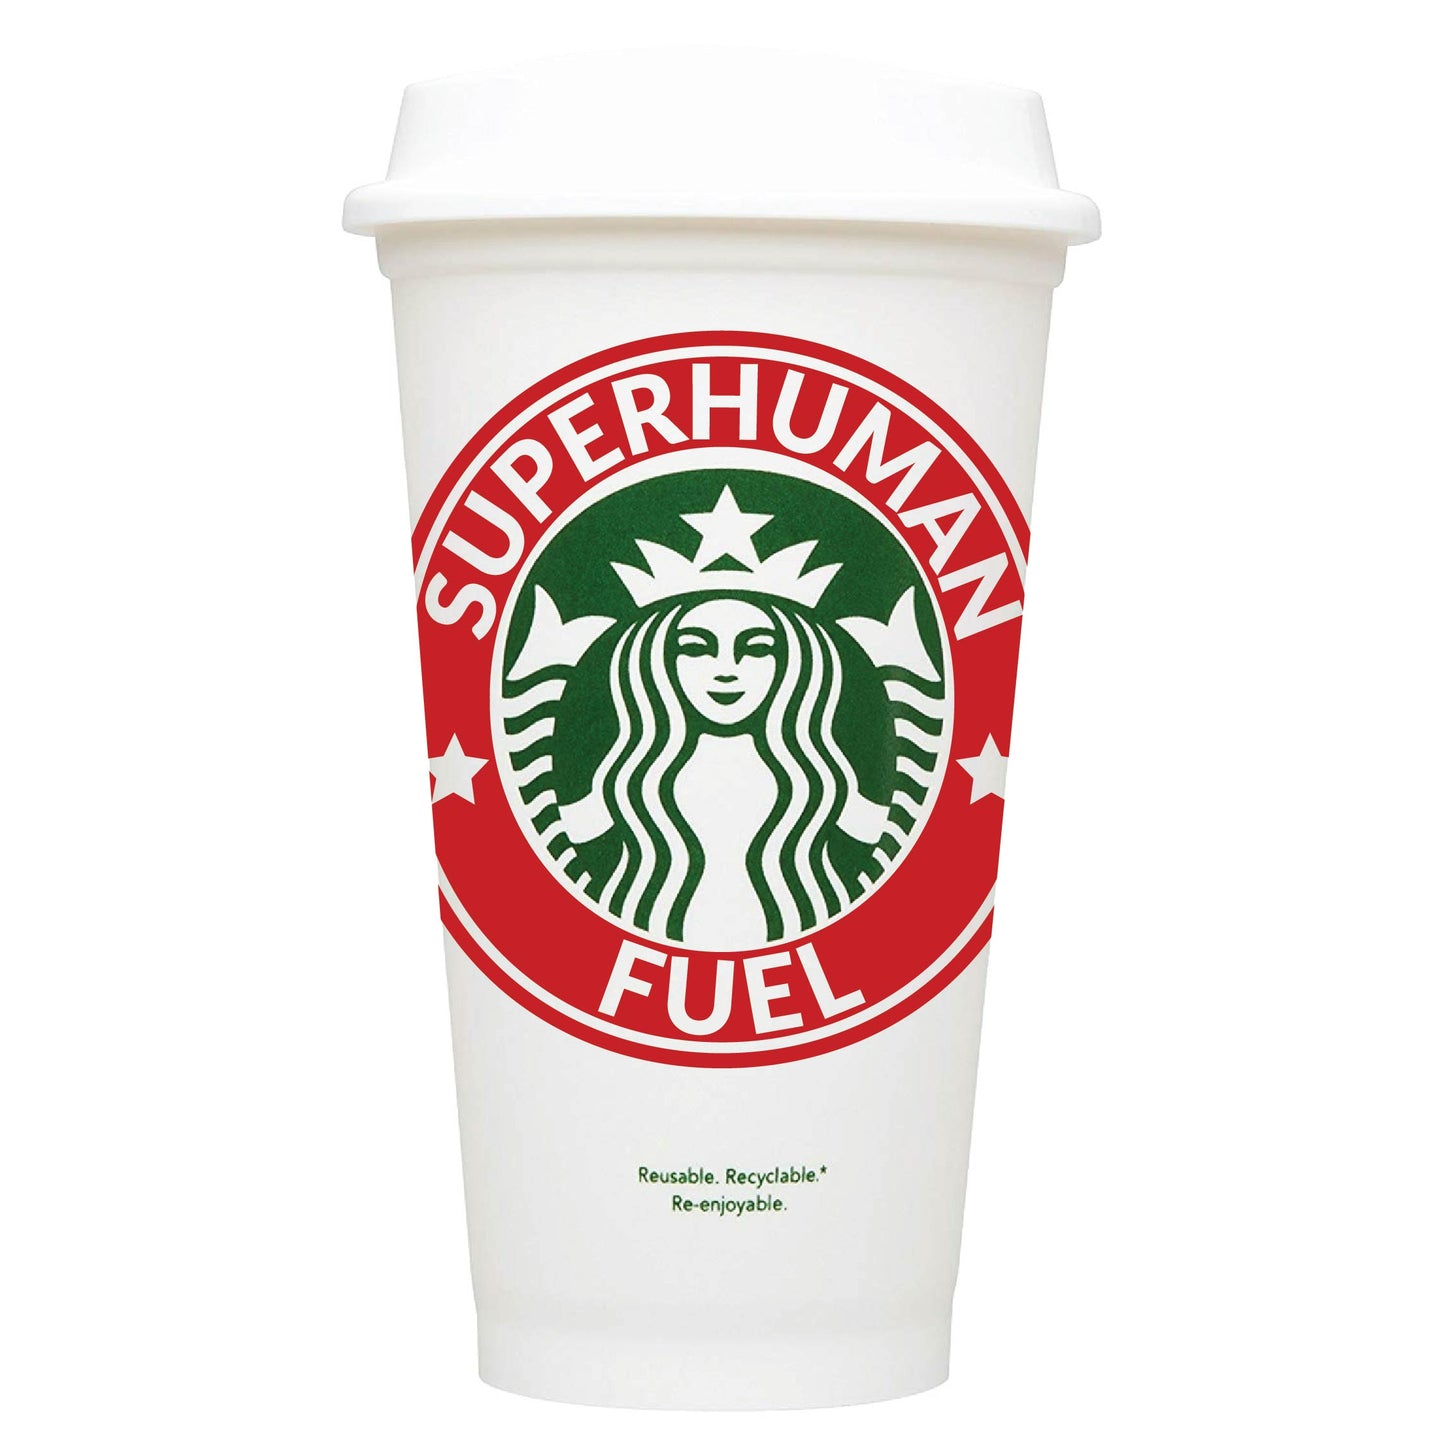 Superhuman Fuel Starbucks Hot Cup